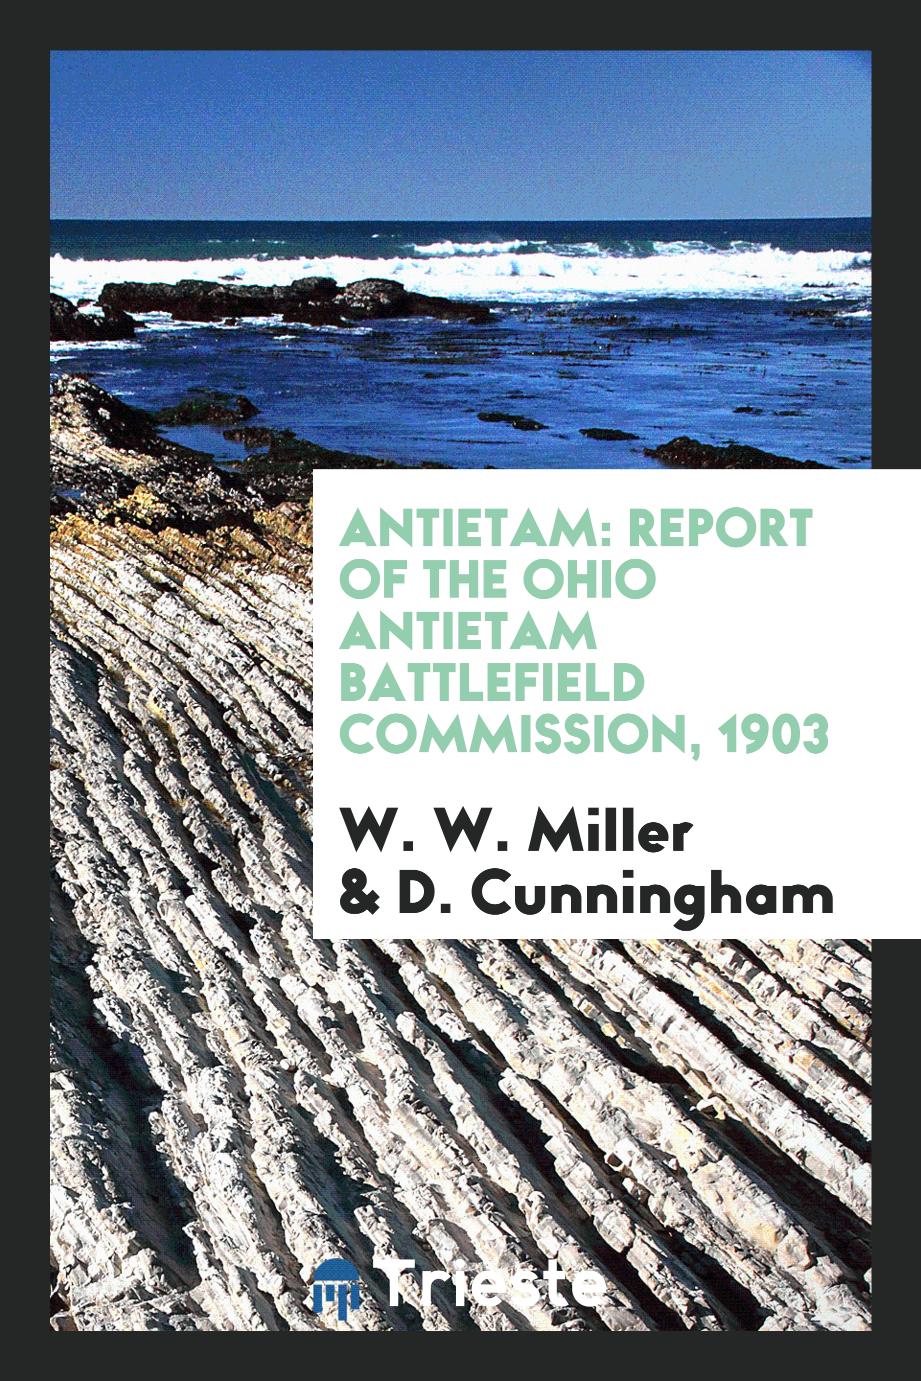 Antietam: Report of the Ohio Antietam Battlefield Commission, 1903